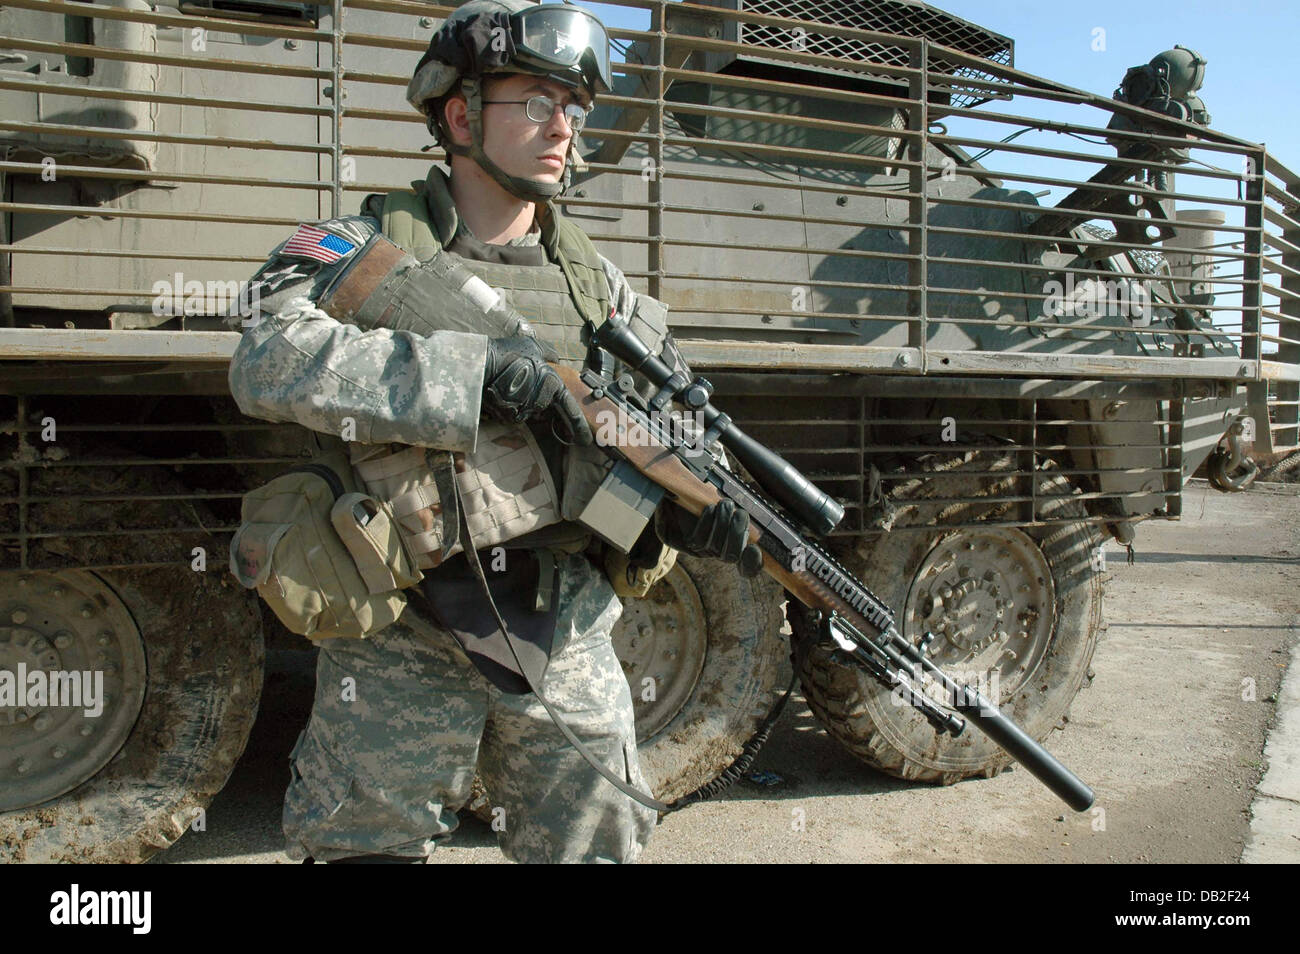 Un soldat monte la garde avec son fusil de sniper M14 au cours d'une patrouille à Bagdad, Iraq, mars 2007. Le soldat appartient à la 3e brigade Stryker de l'équipe de combat de la 2e Division d'infanterie, faisant partie du 1er Bataillon, 23e Régiment d'infanterie. Il porte un uniforme de combat avancé, l'Interceptor Body Armor und un casque de combat avancé. Photo : Carl Schulze Banque D'Images